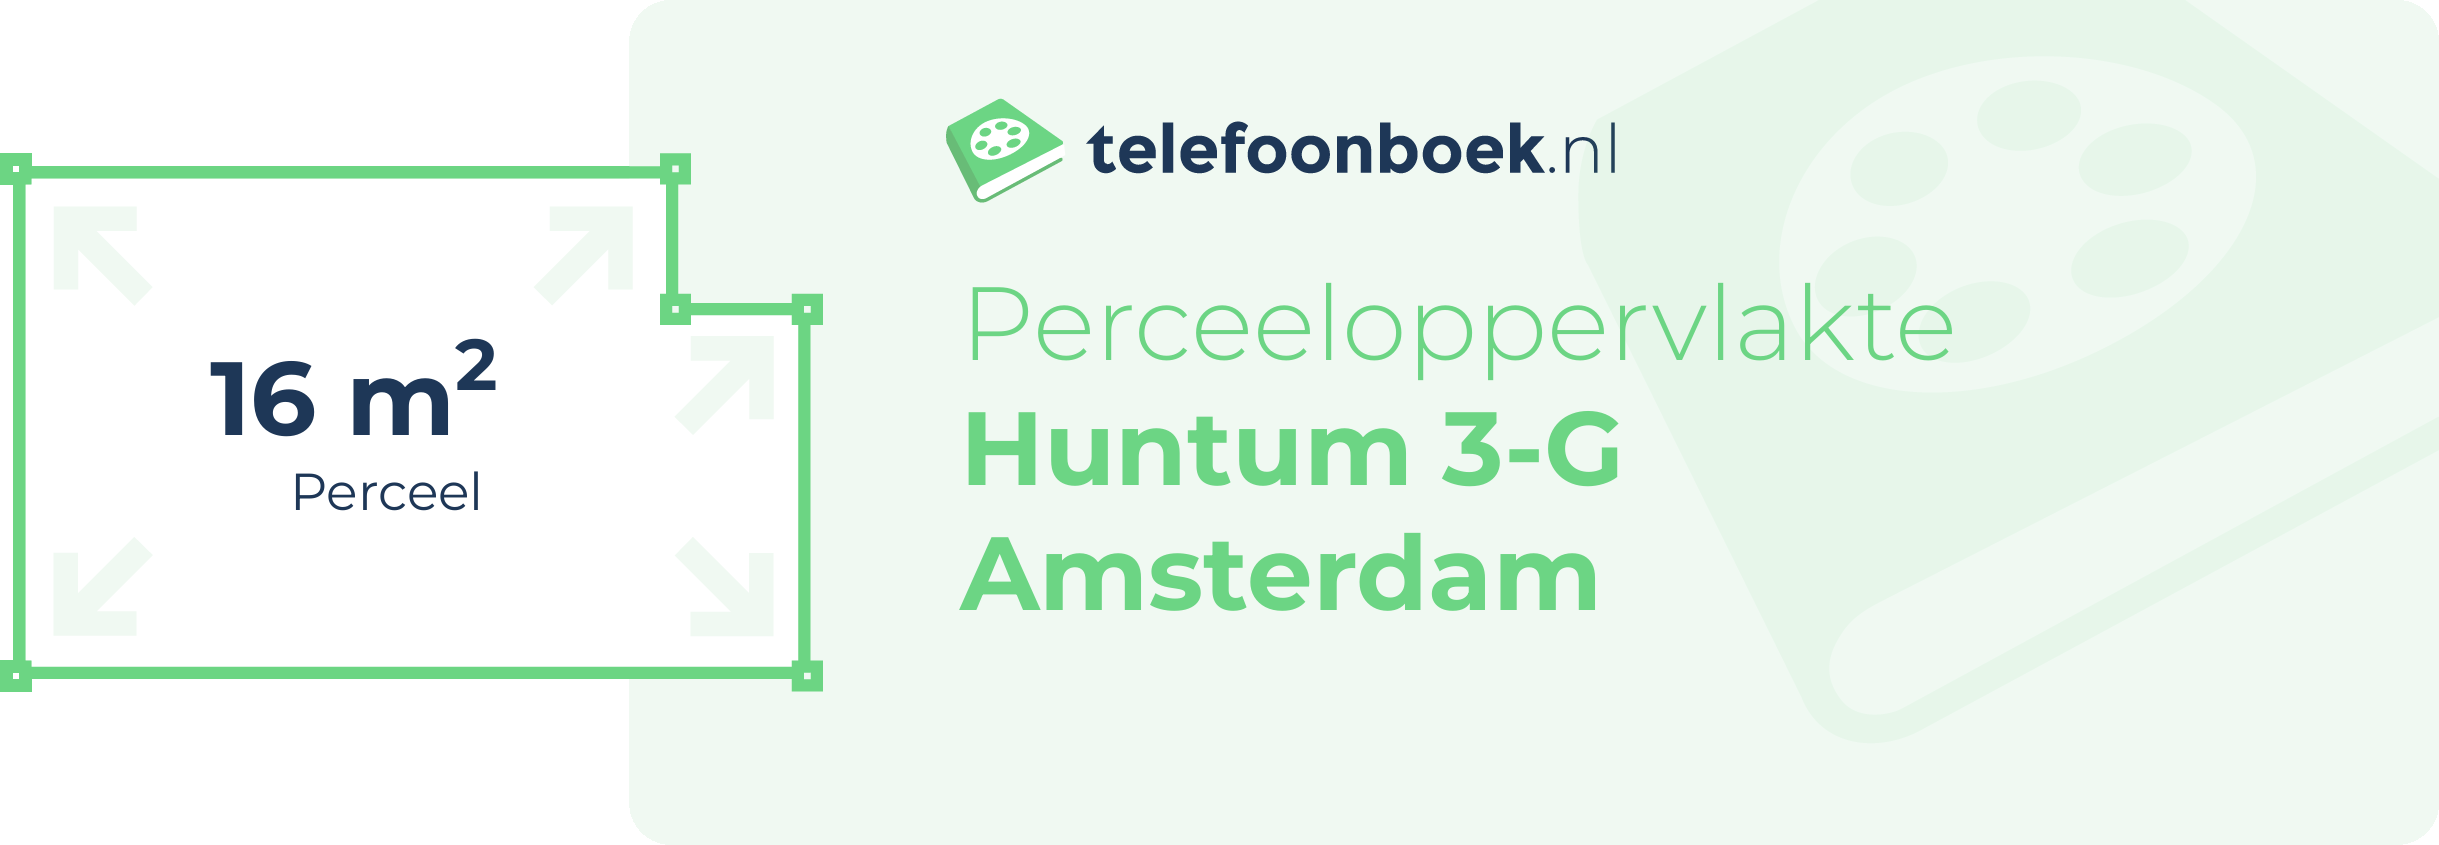 Perceeloppervlakte Huntum 3-G Amsterdam